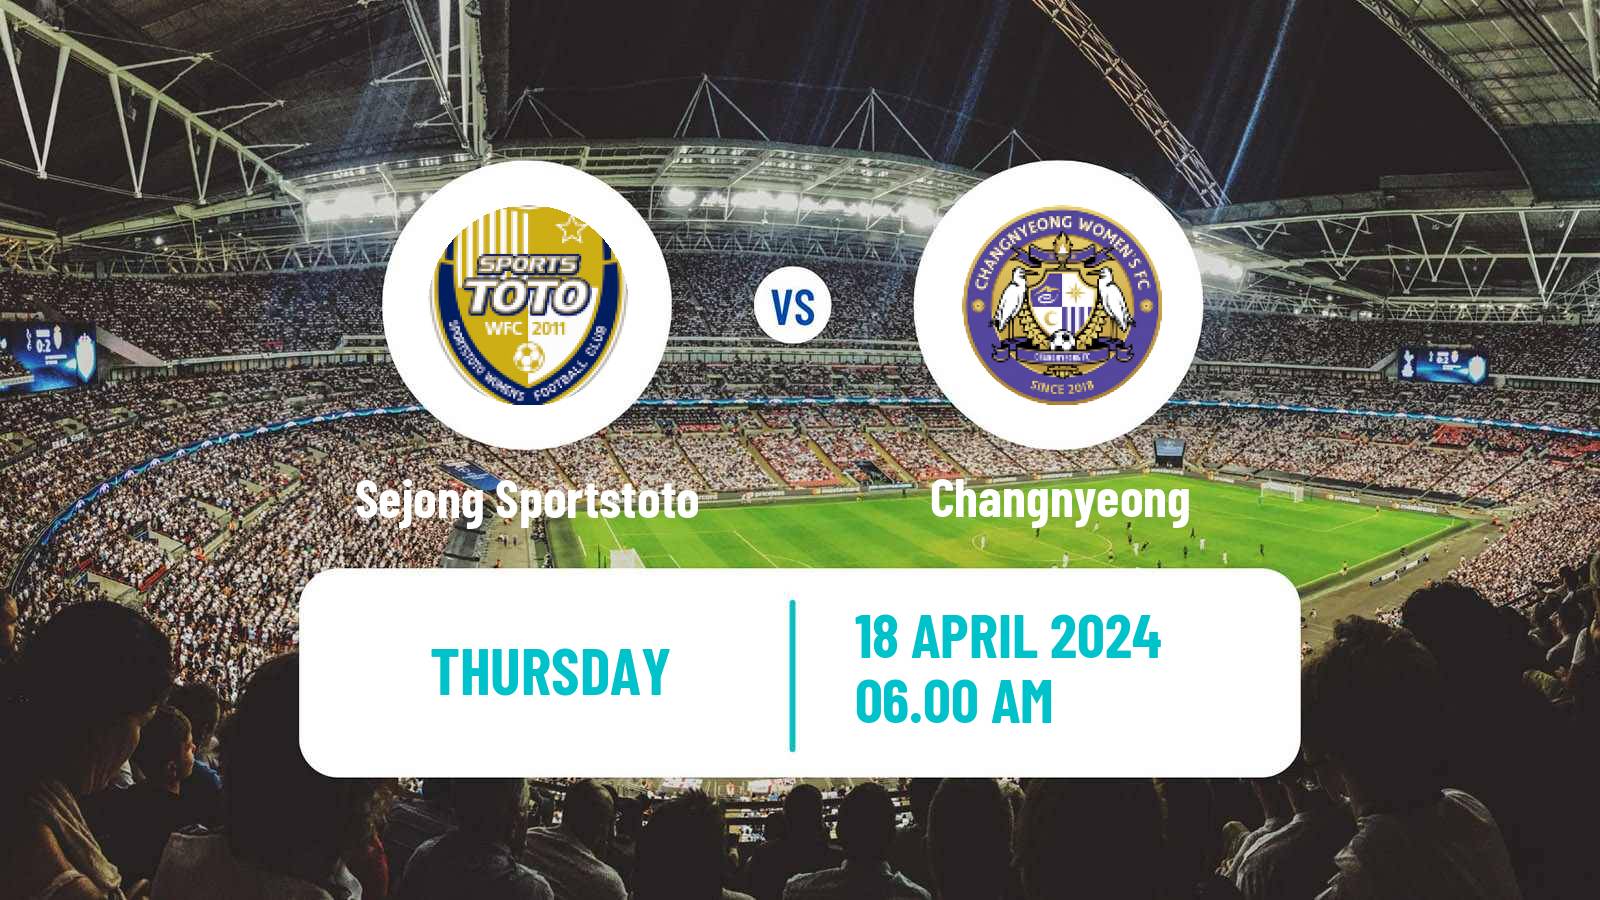 Soccer South Korean WK League Sejong Sportstoto - Changnyeong